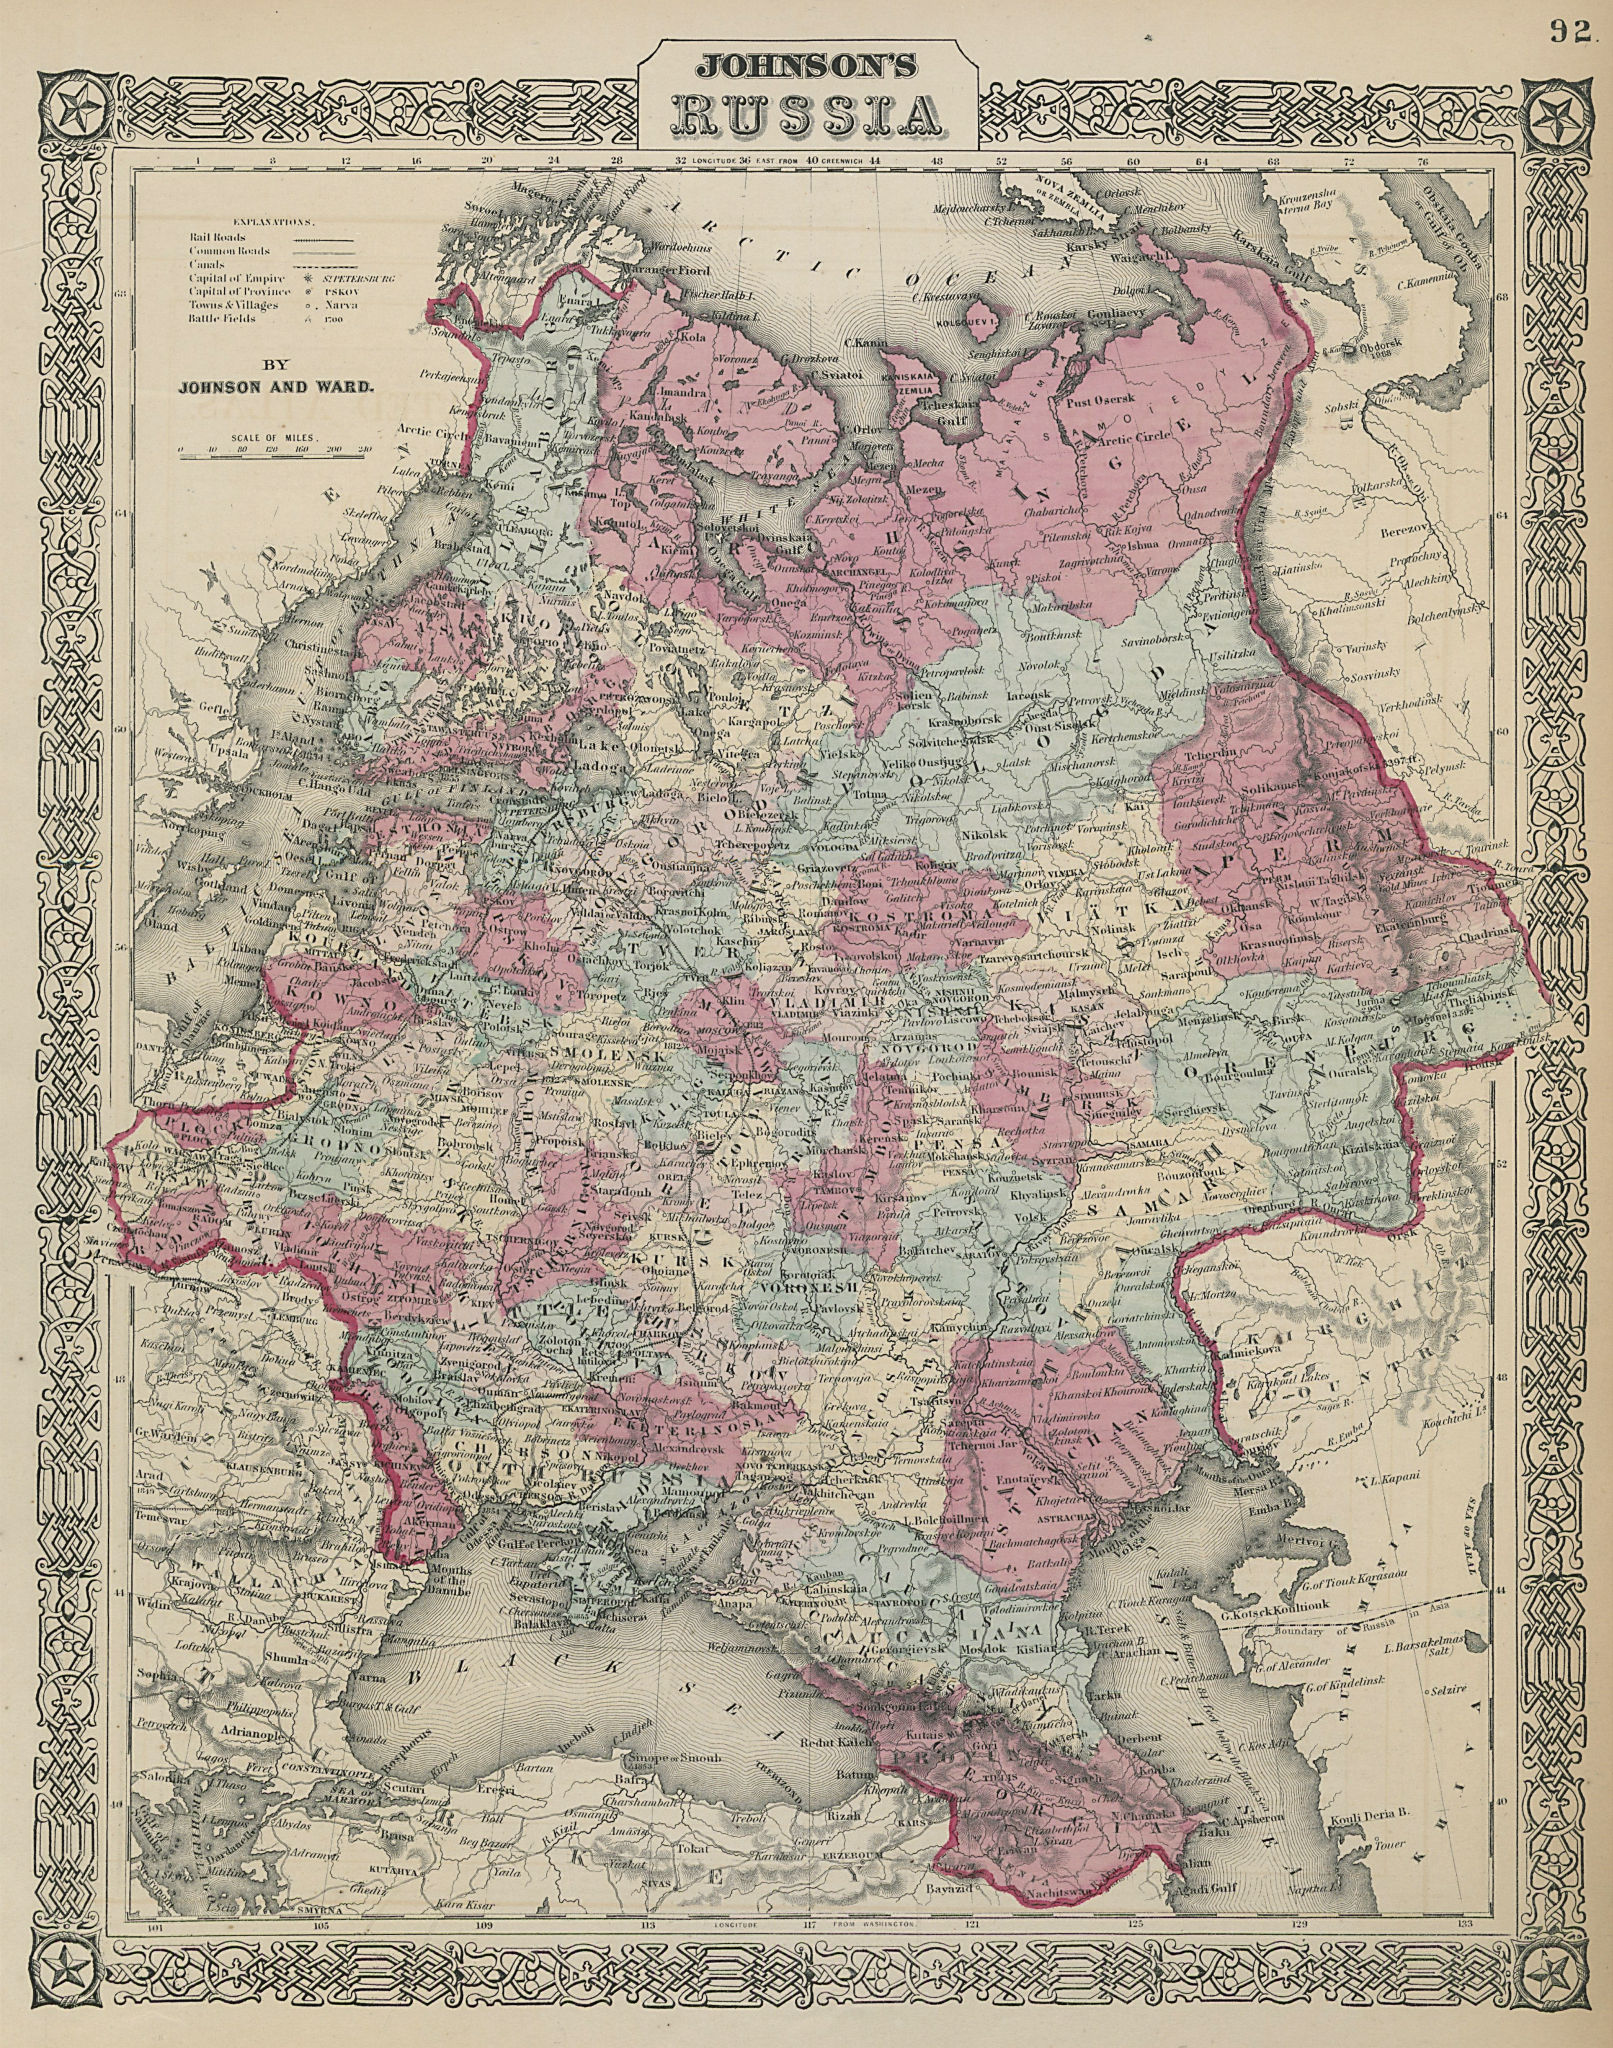 Associate Product Johnson's Russia in Europe. Ukraine Poland Baltics Finland Caucasus 1865 map